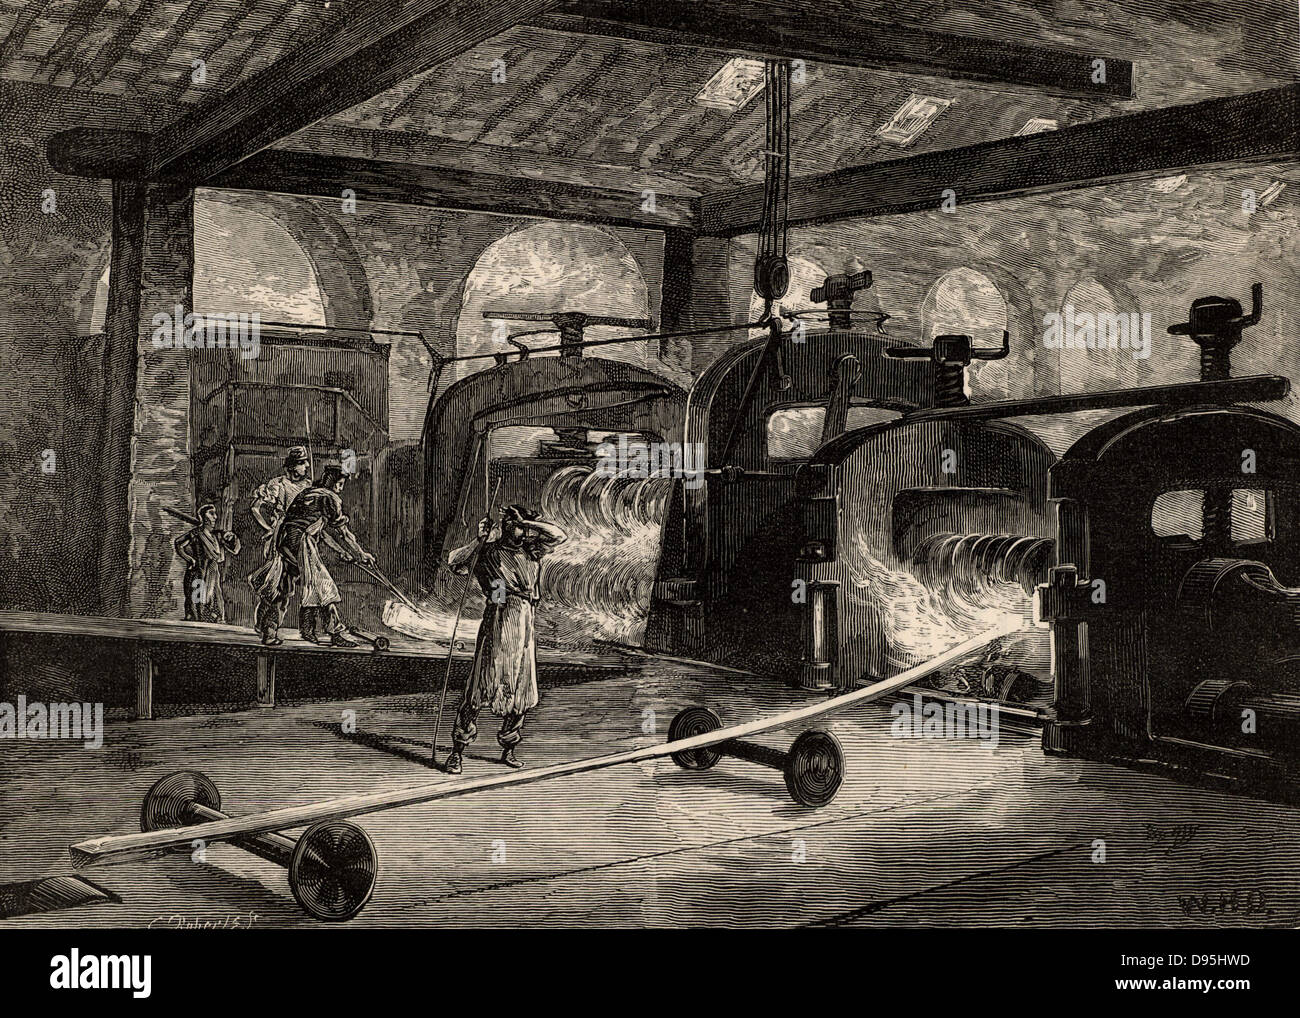 Eine Batterie von Walzwerken stahl schiene. Abbildung des britischen Künstlers William Heysman Overend (1851-1898). Gravur von "großen Industrien von Großbritannien" (London, 1880). Gravur. Stockfoto